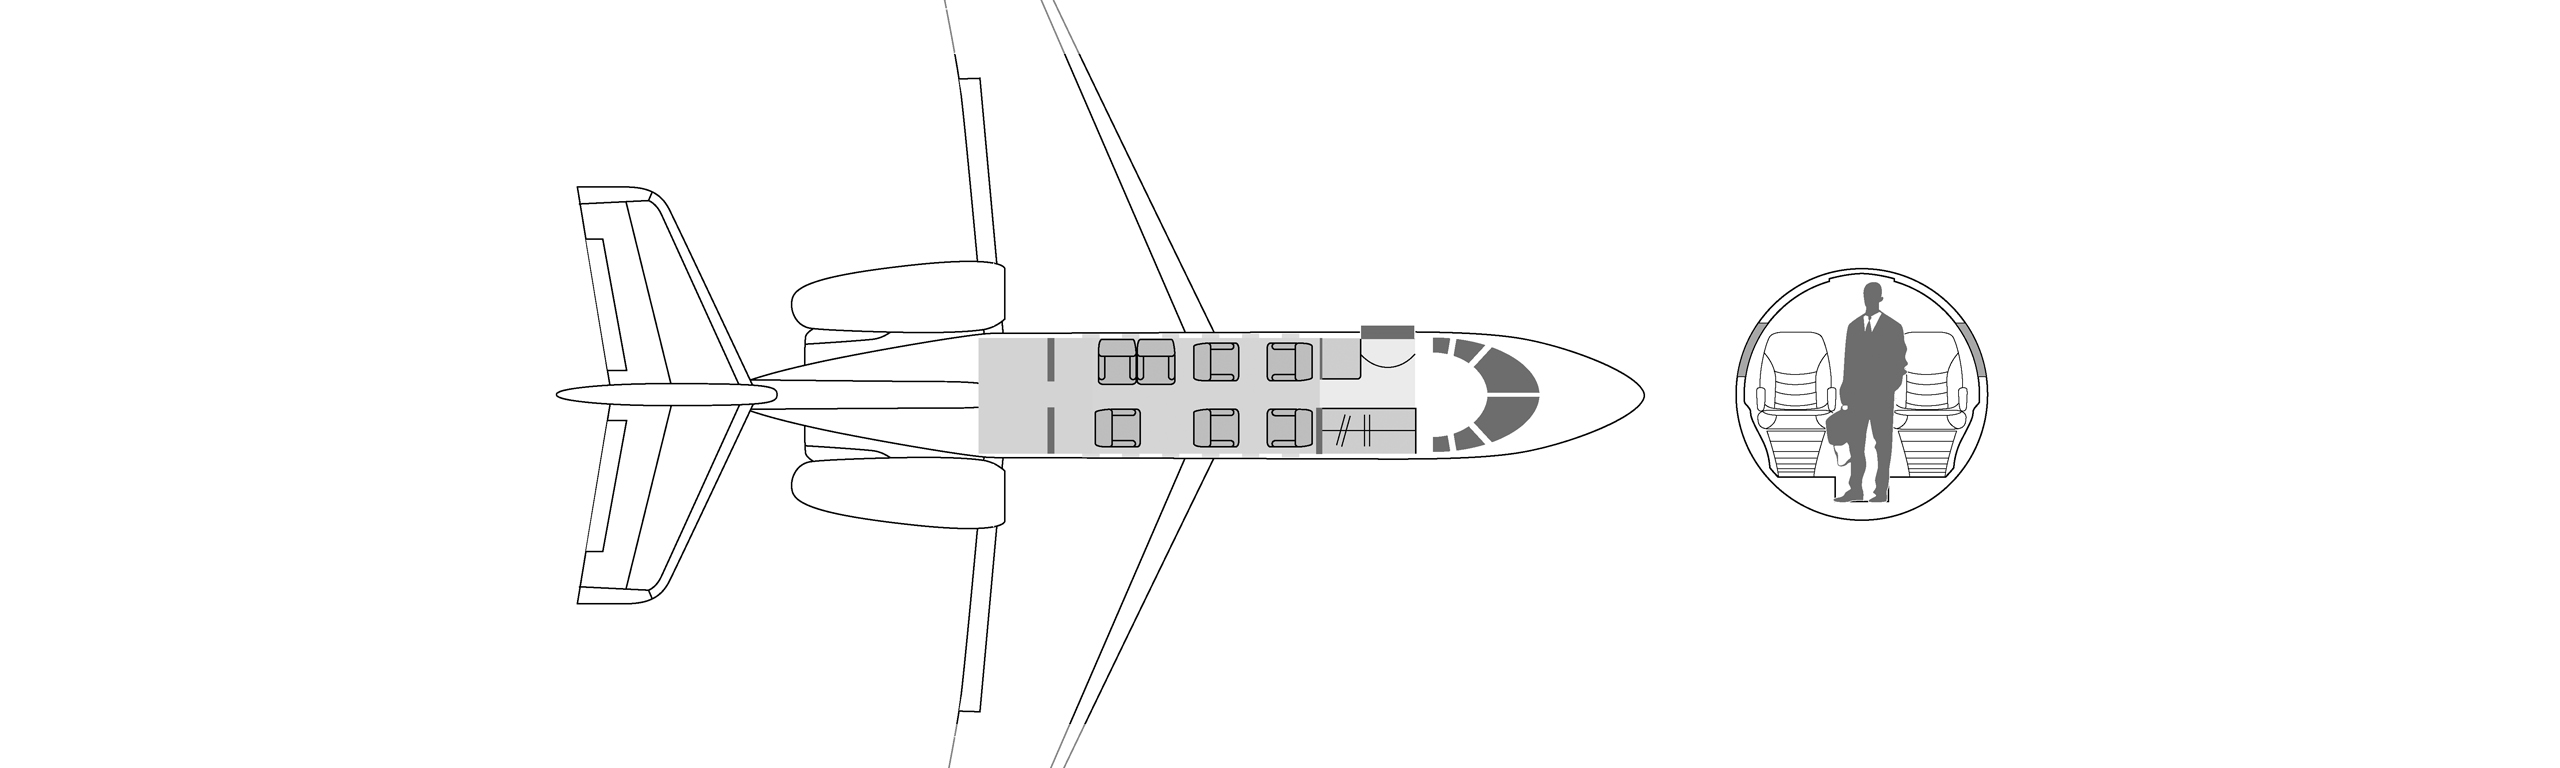 aircraft_image